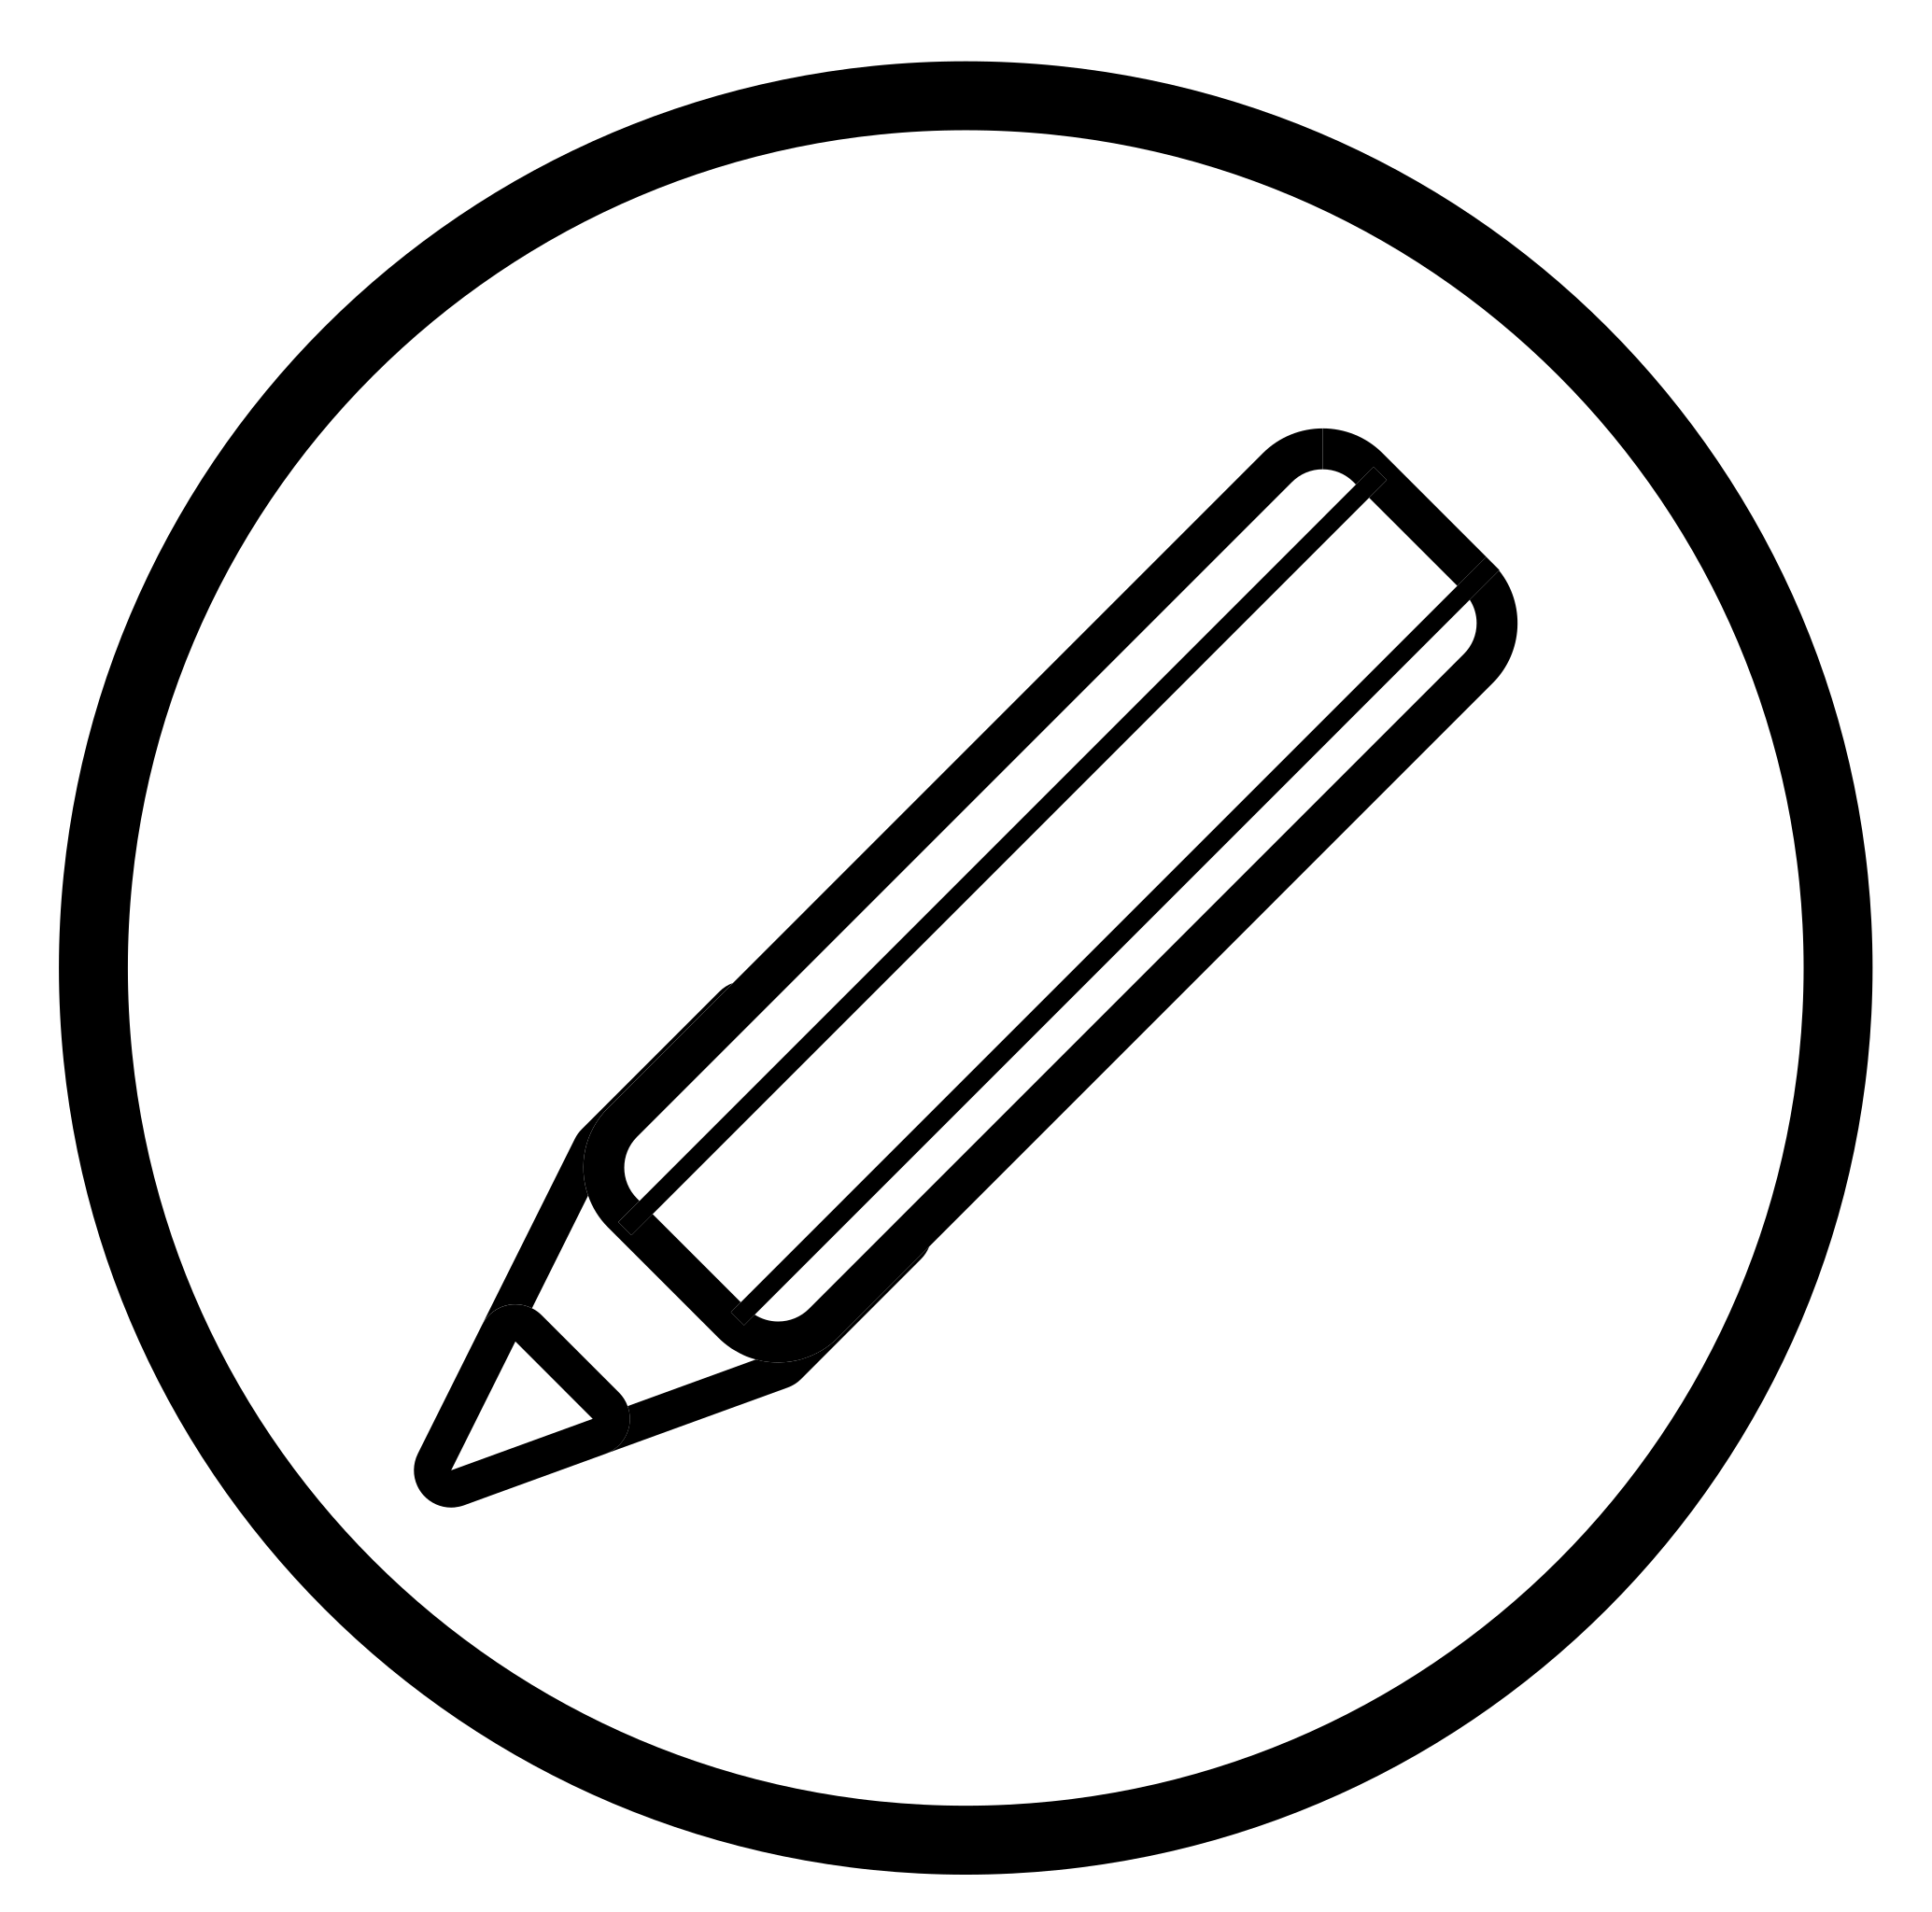 BLACK PENCIL BLACK vector icon, SVG(VECTOR):Public Domain